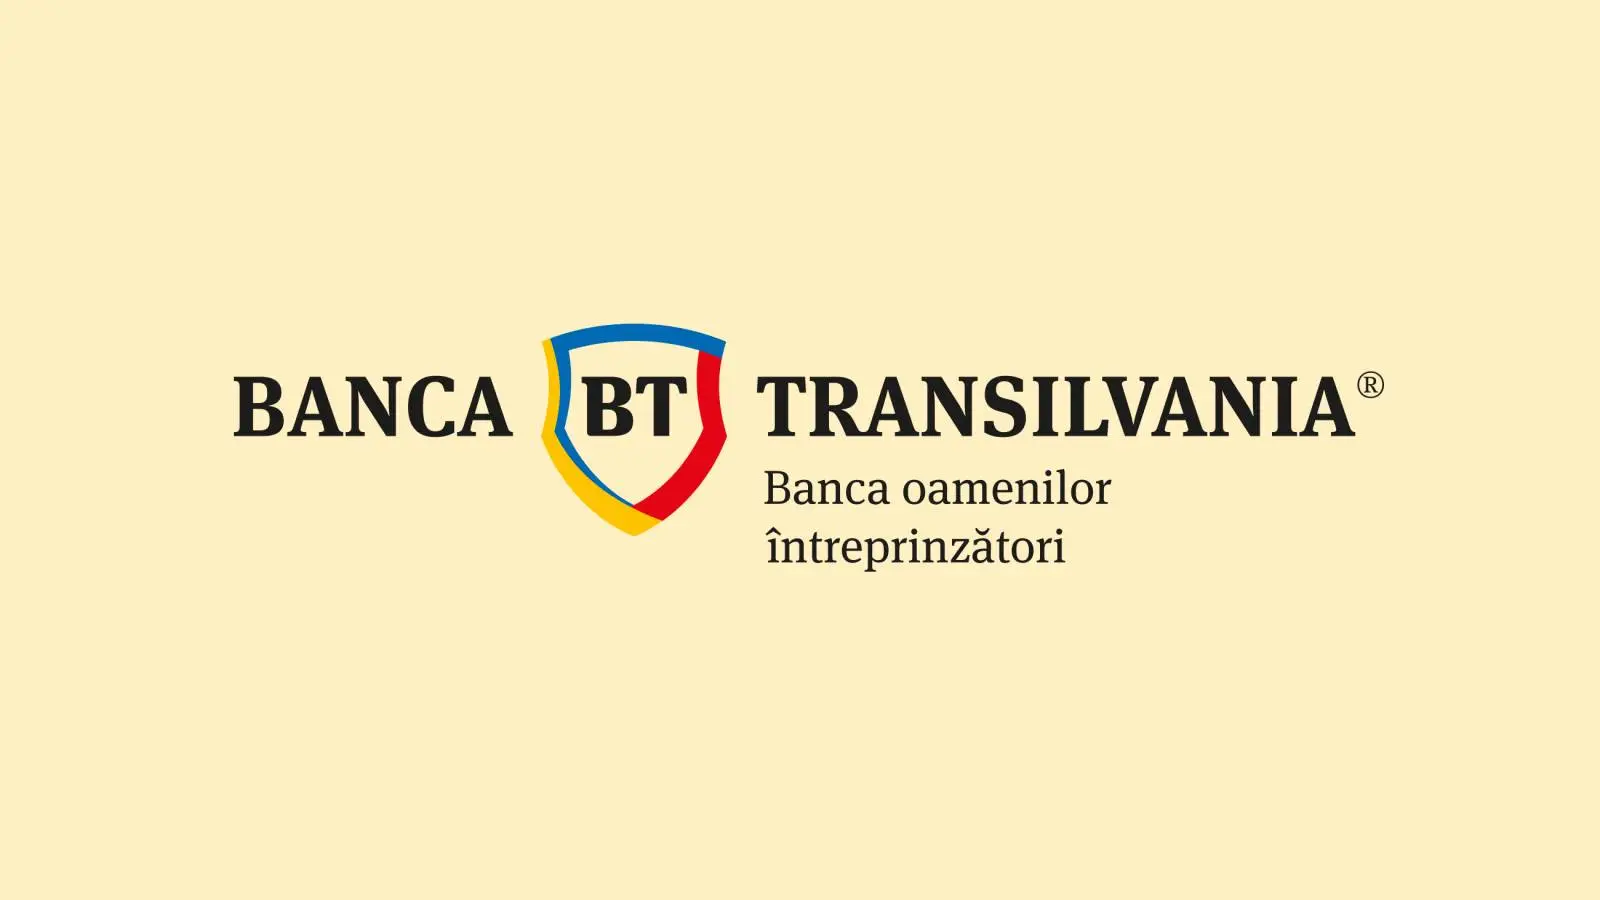 Belangrijke aankondiging van BANCA Transilvania FREE voor Roemeense klanten